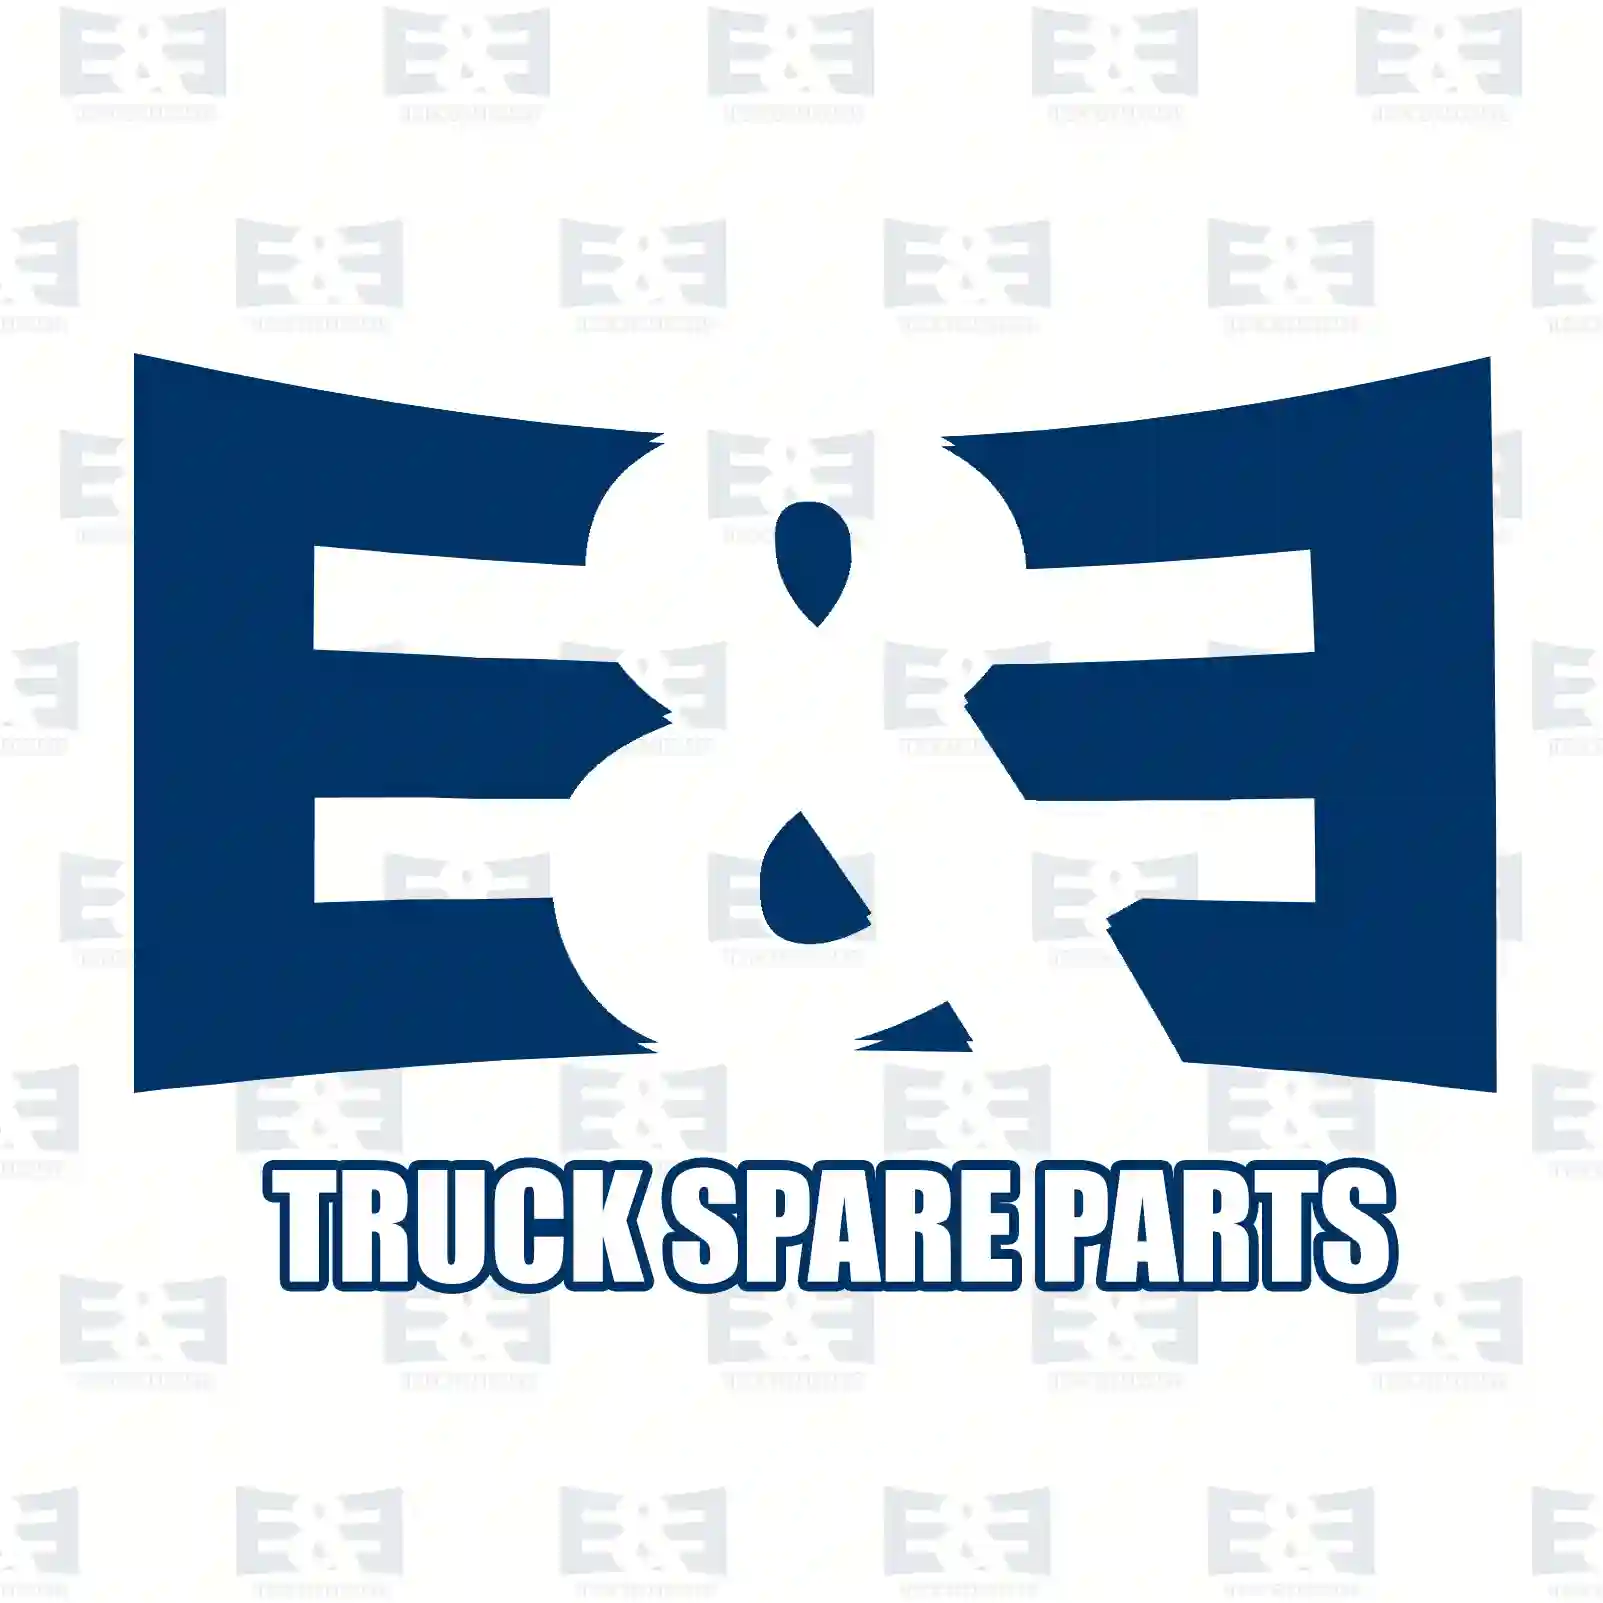 O-ring, 2E2286259, 168008, 211813, 290534, 372984, ZG01851-0008 ||  2E2286259 E&E Truck Spare Parts | Truck Spare Parts, Auotomotive Spare Parts O-ring, 2E2286259, 168008, 211813, 290534, 372984, ZG01851-0008 ||  2E2286259 E&E Truck Spare Parts | Truck Spare Parts, Auotomotive Spare Parts